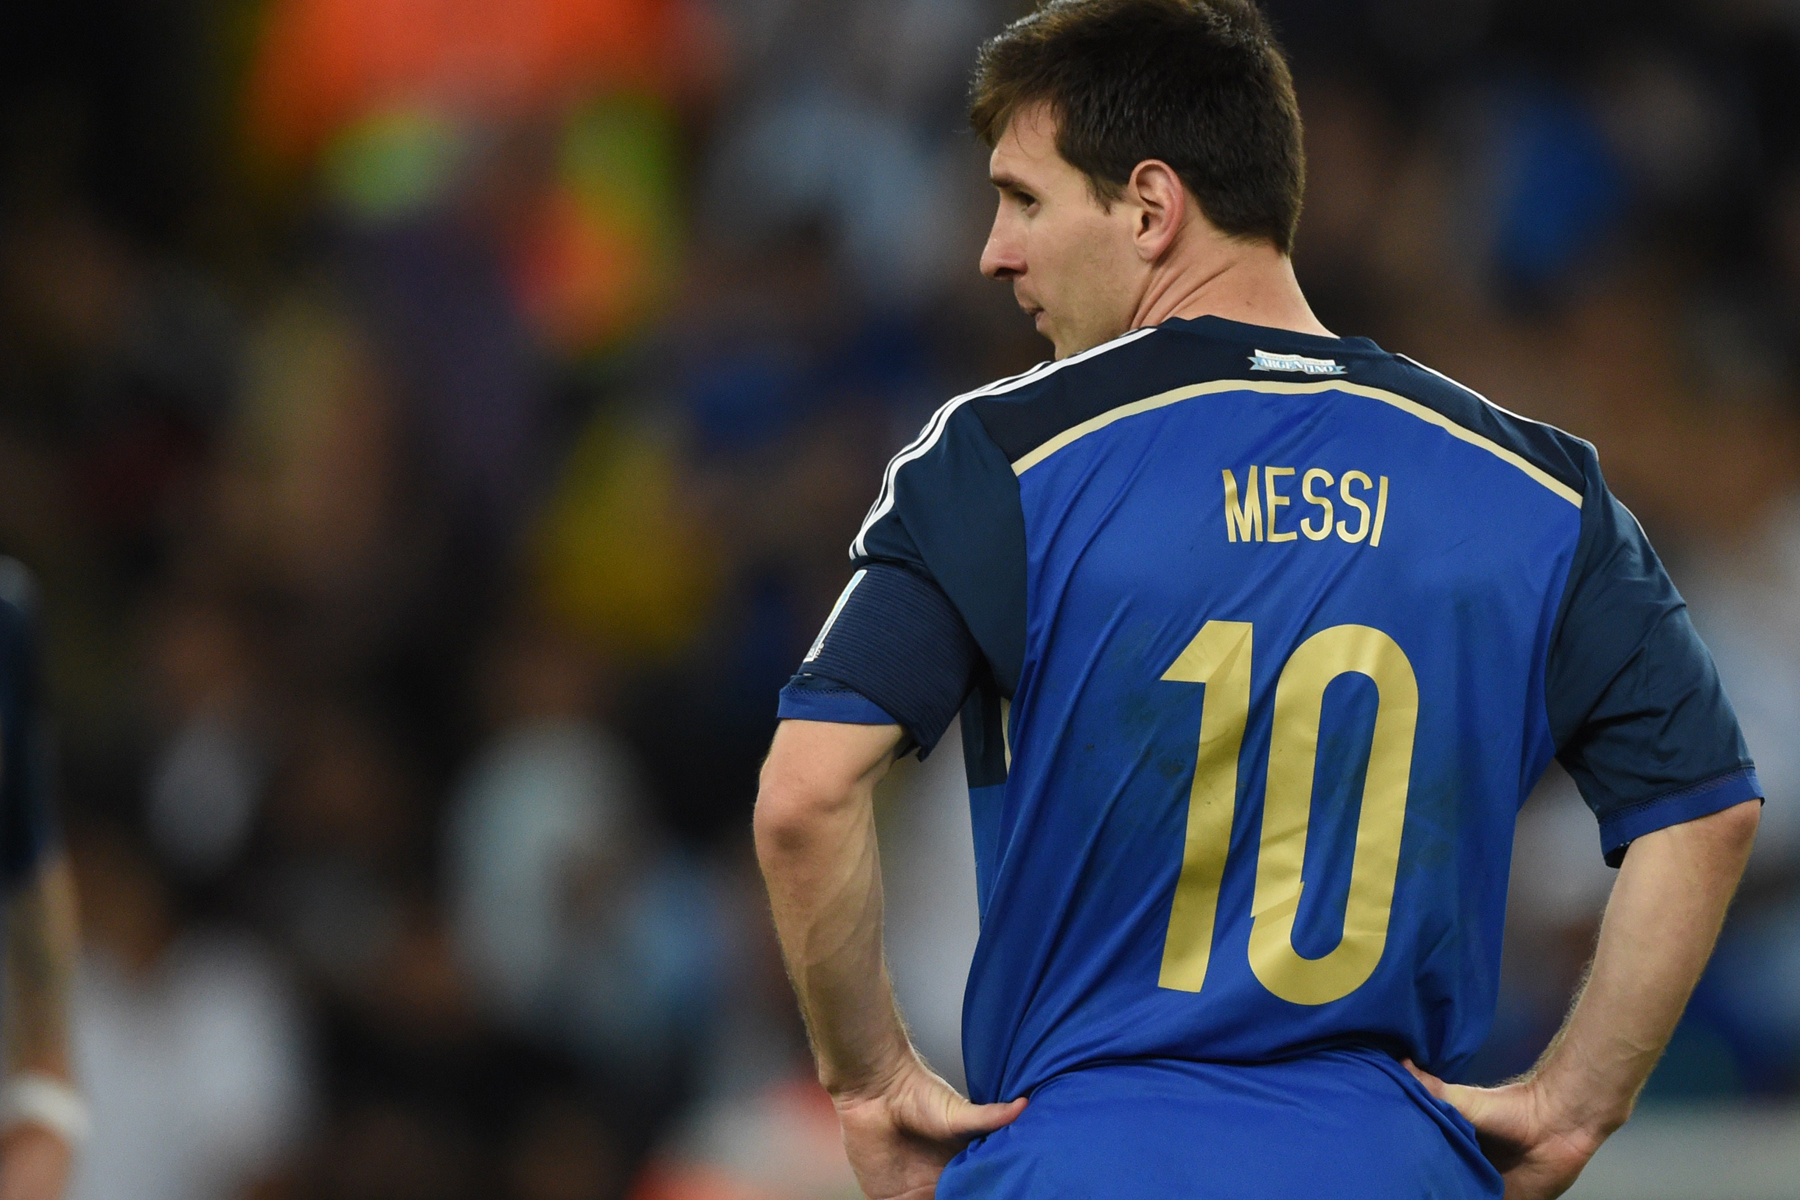 Sampaoli: Messi listo para jugar contra España 